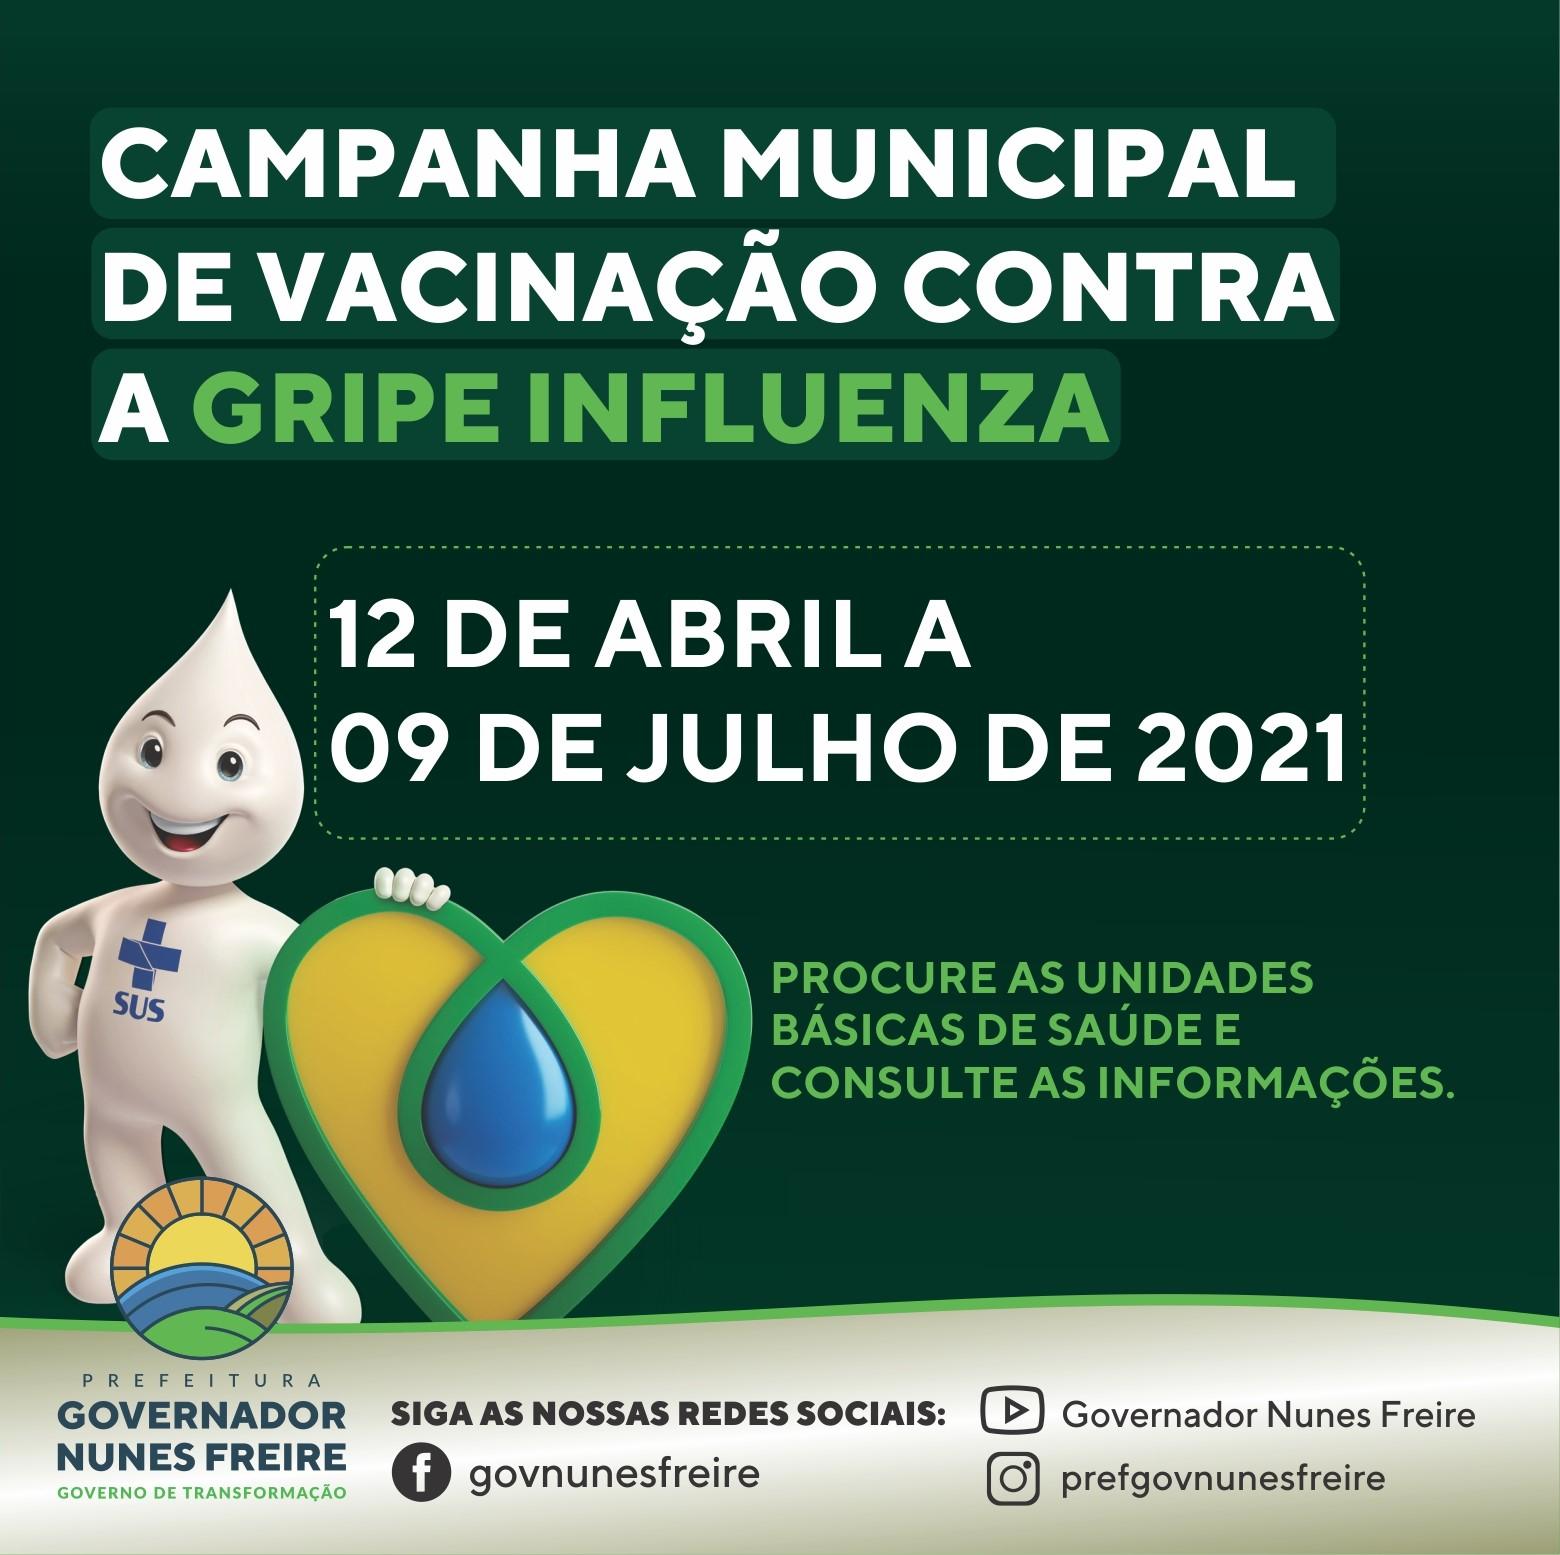 Prefeitura de Governador Nunes Freire inicia campanha de vacinação contra a influenza 2021 nesta segunda, 12